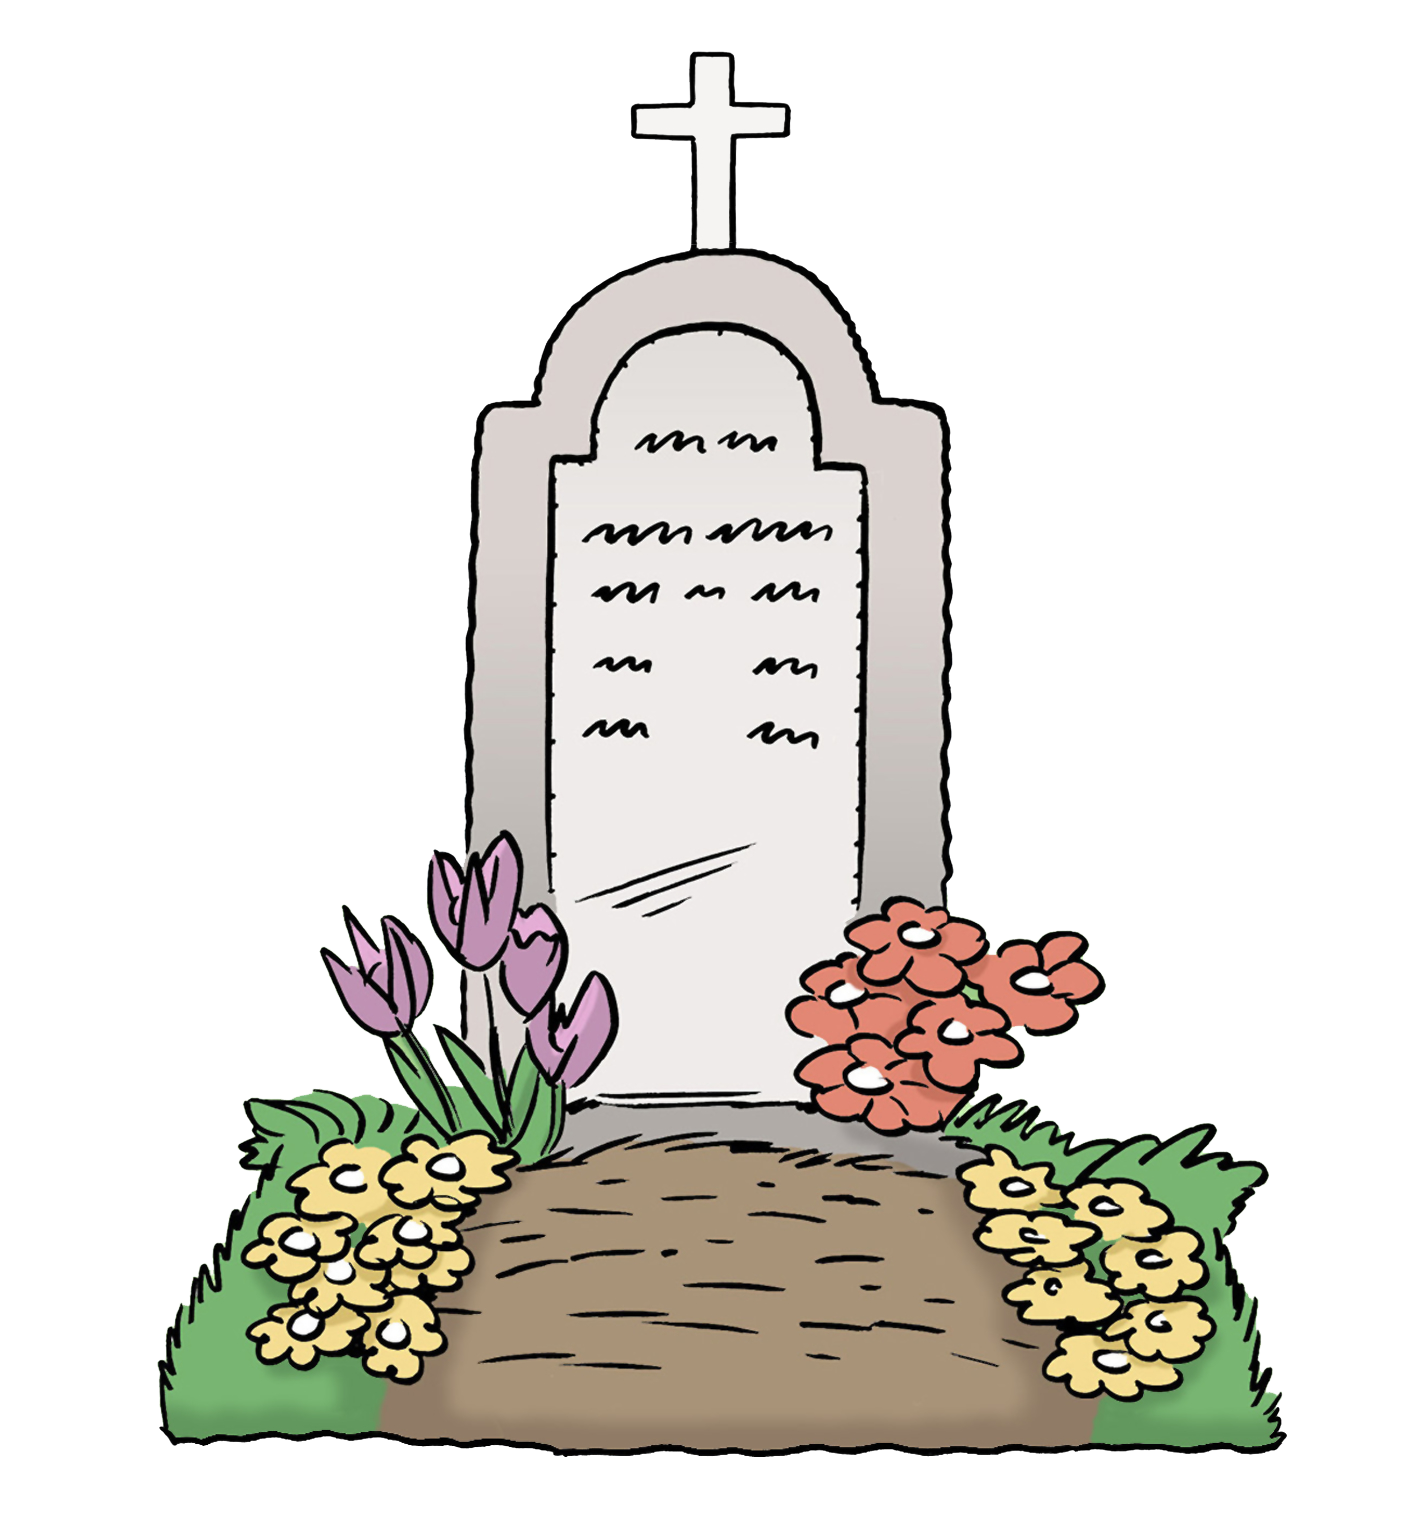 Grafik: Grabstein mit gepflanzten Blumen